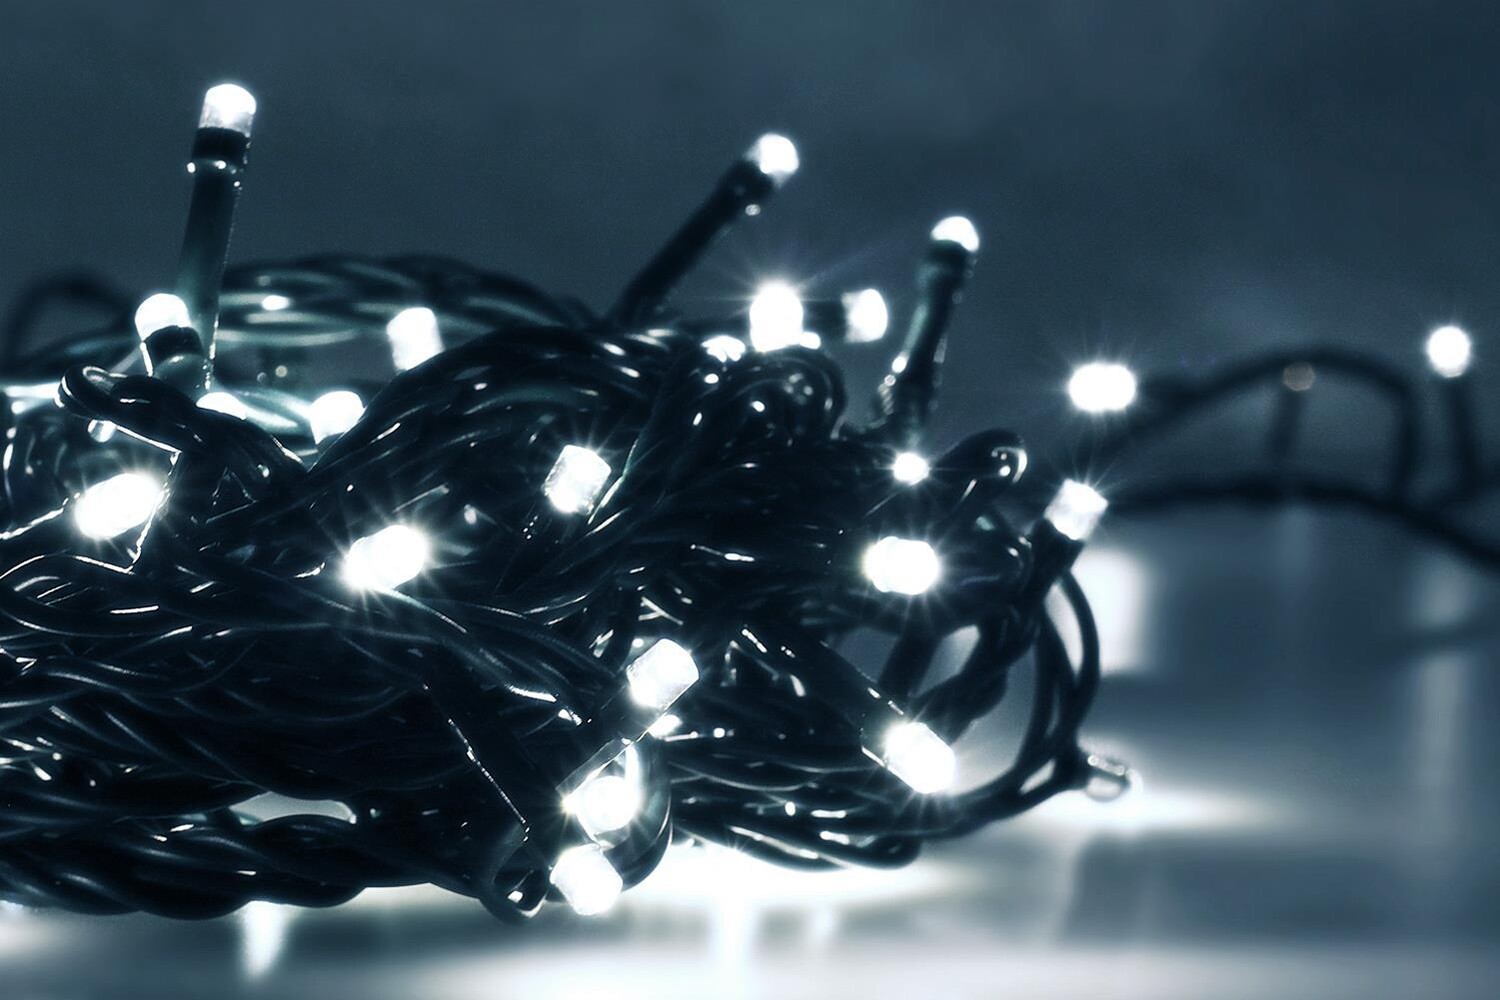 LED Universum LED Lichterkette kaltweiß von 16m Länge 200LEDs 3m Zuleitung Stimmungsbeleuchtung spritzwassergeschützt für innen und außen Weihnachten Feier Wohnzimmer Garten Terasse Energieklasse A